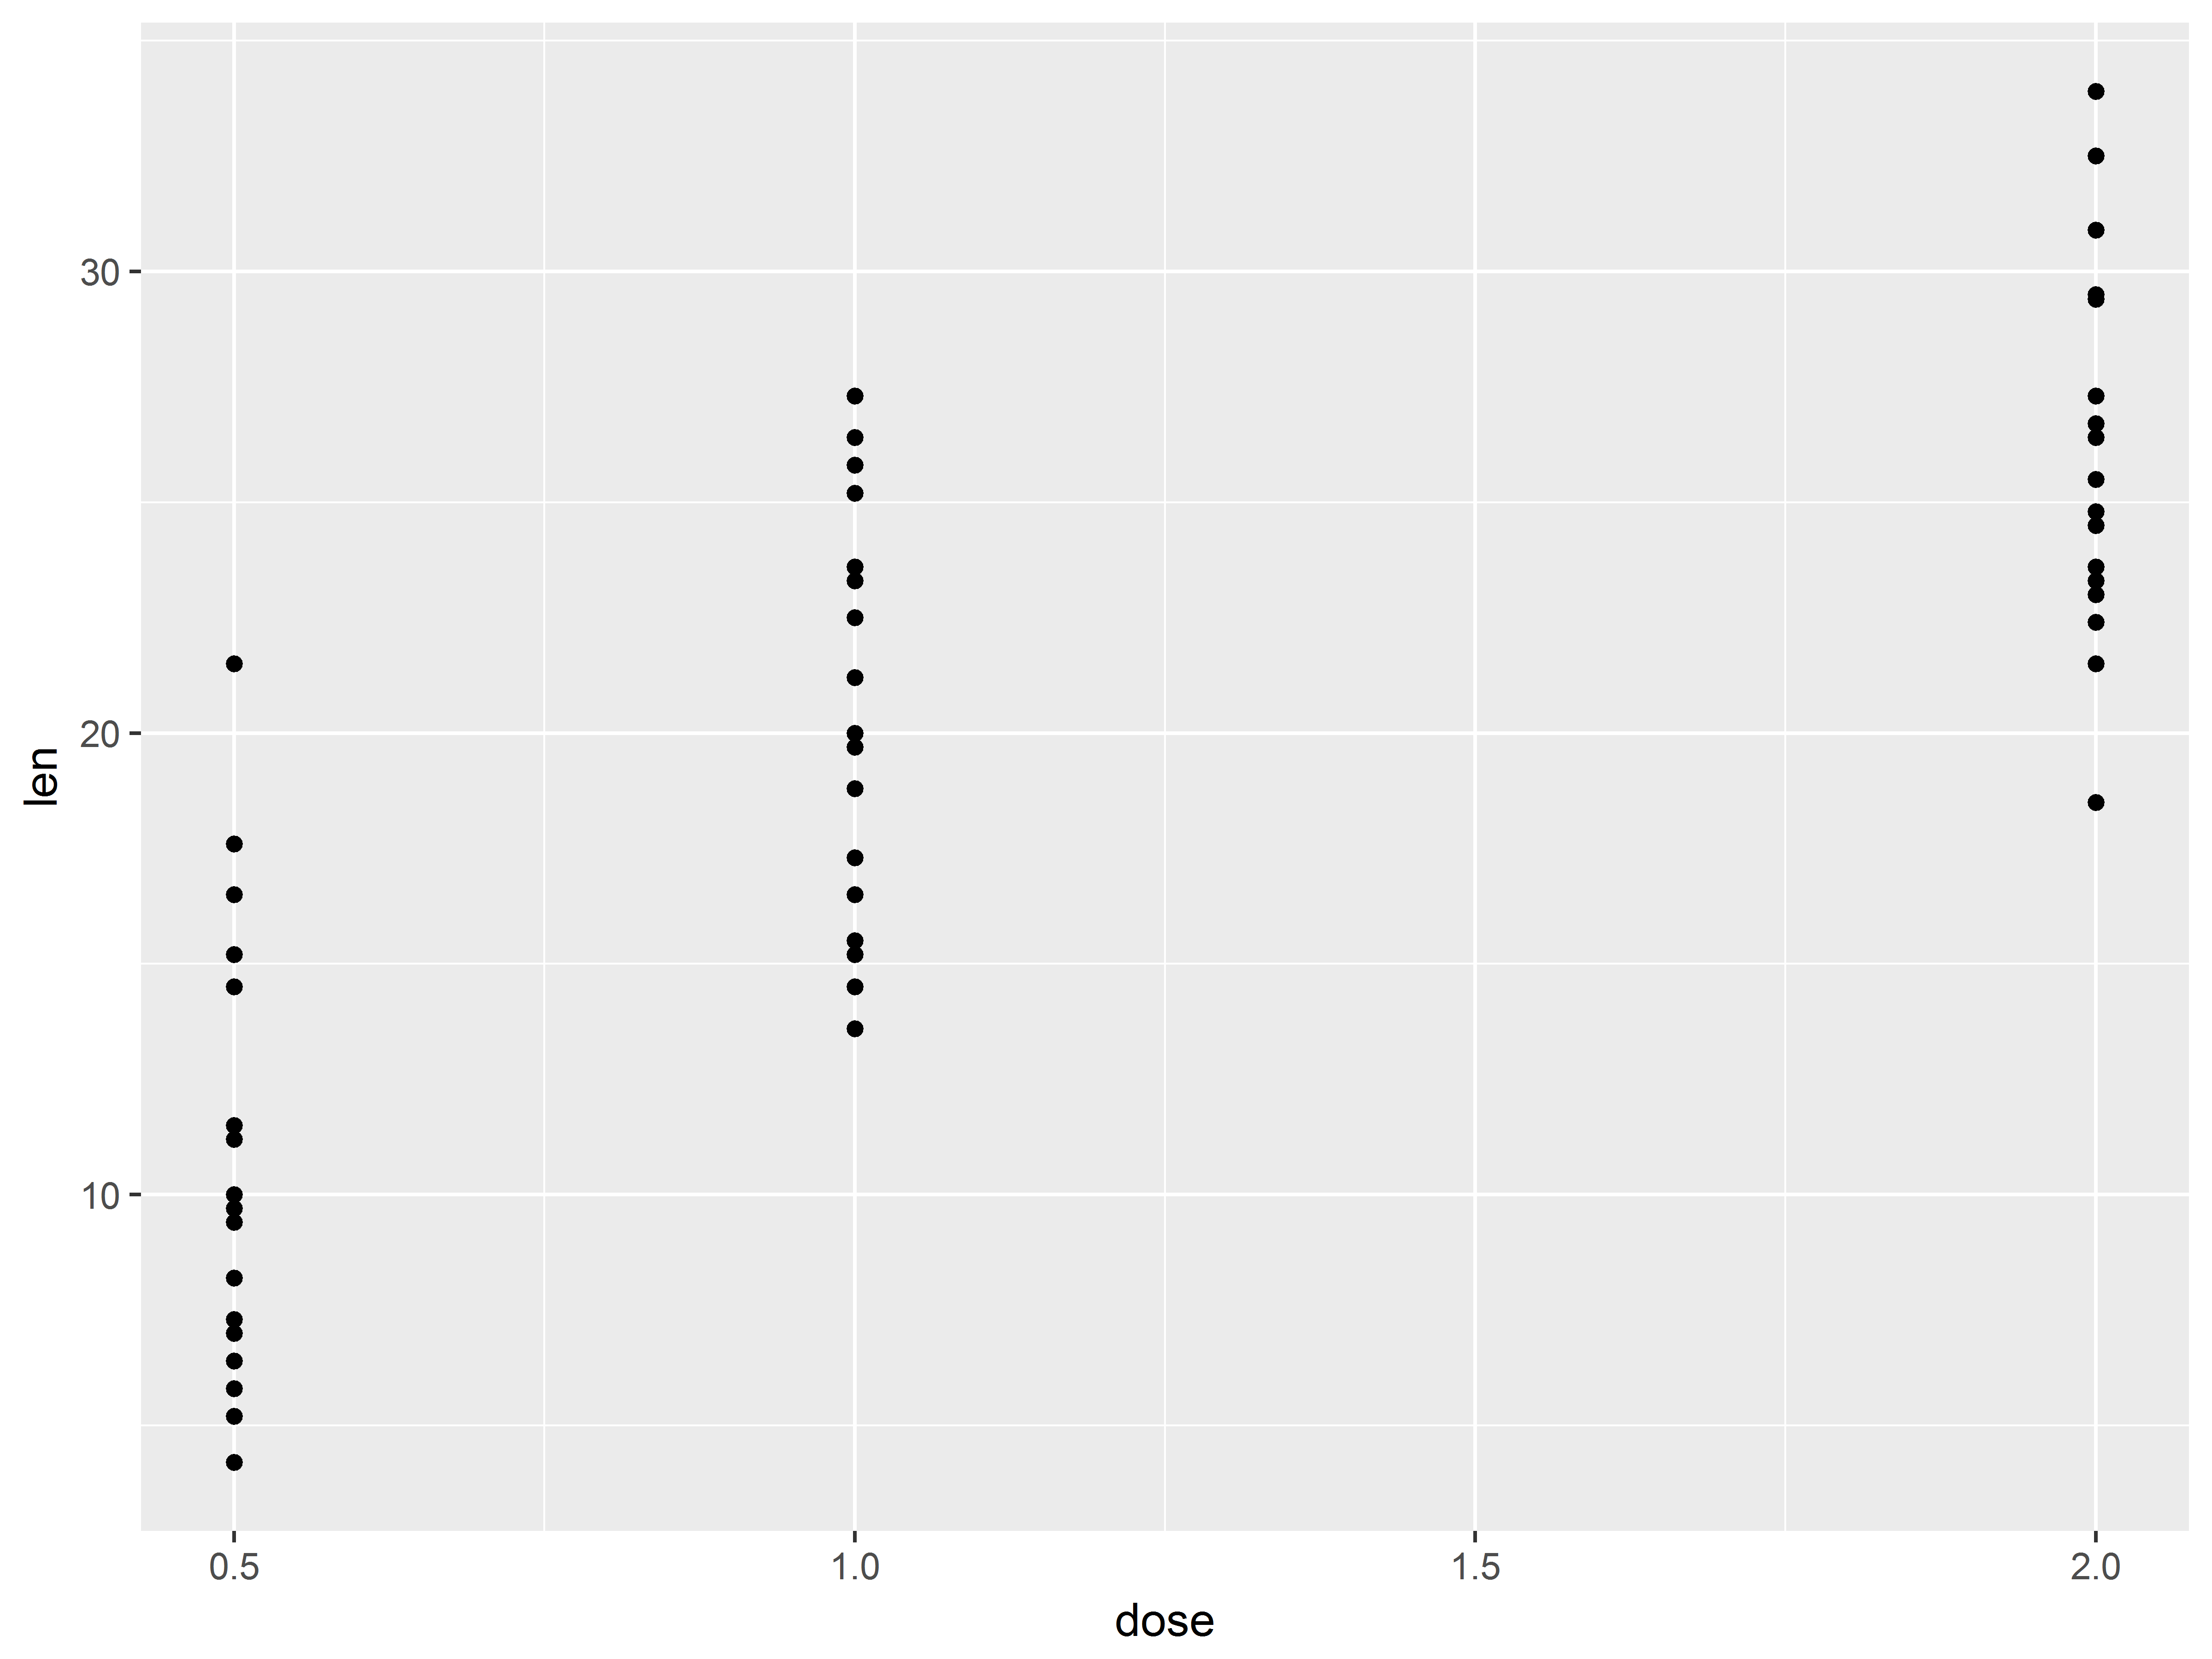 Fig 2.3a dose-len scatter plot